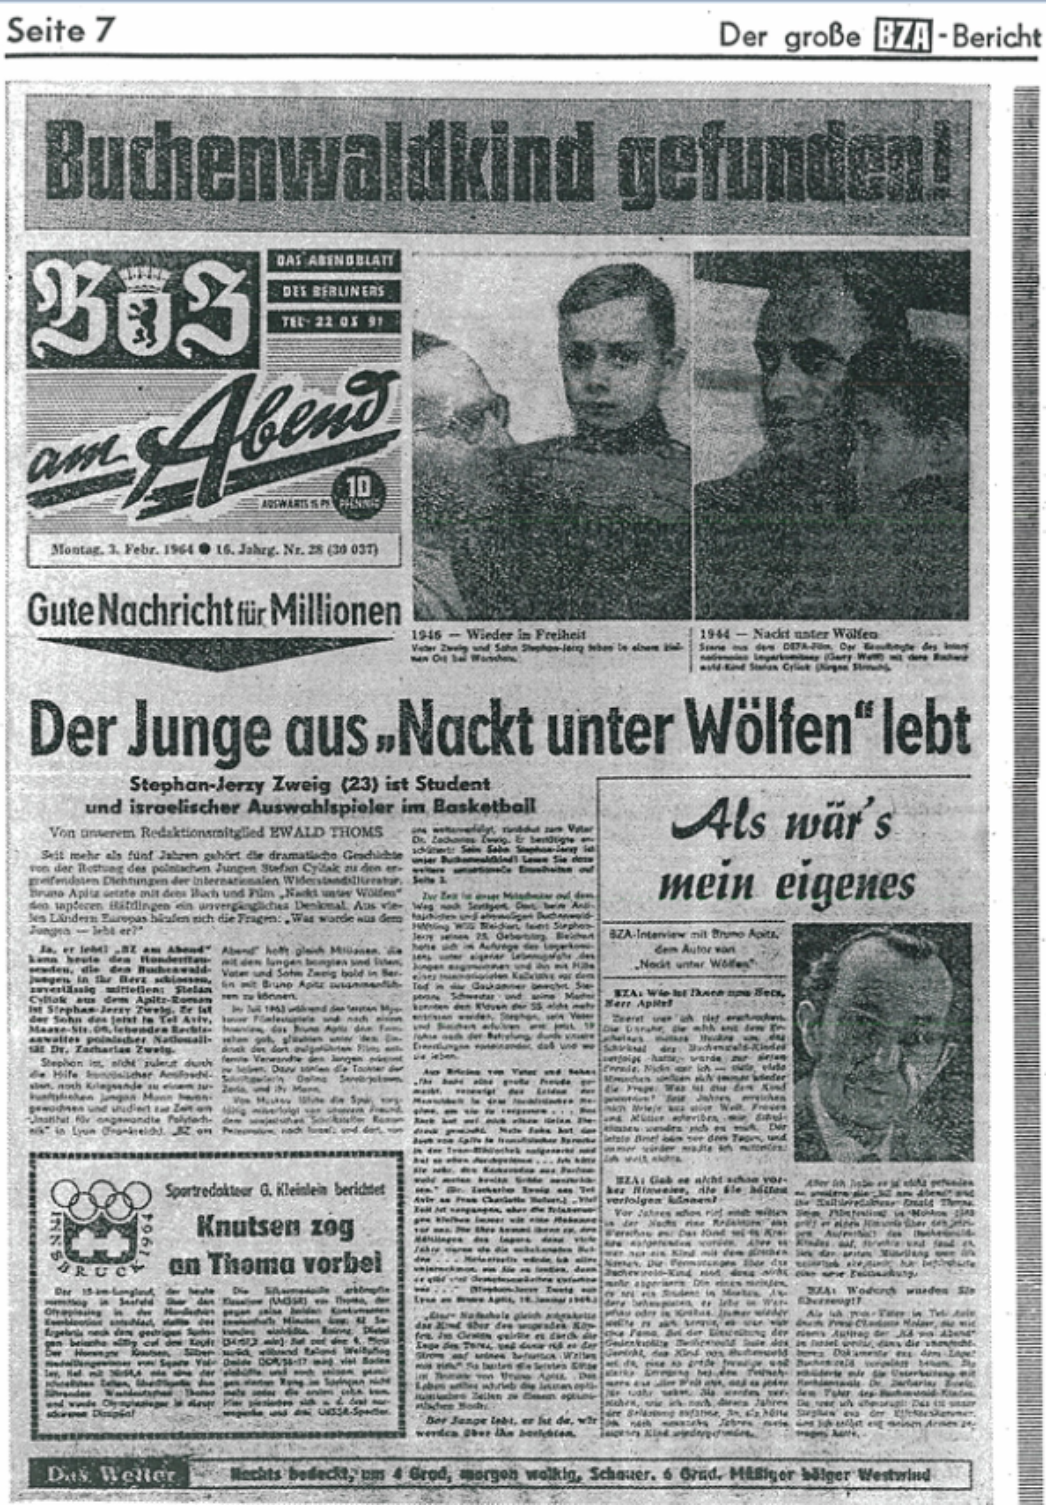 Zu sehen ist die Seite 7, der Berliner Zeitung am Abend, 3. Februar 1964. Die seiten Überschrift lautet "Buchenwaldkind gefunden" . Unter Fotografien eines Jungen steht "Gute nachricht für Millionen. Der Junge aus 'Nackt unter Wölfen' lebt.